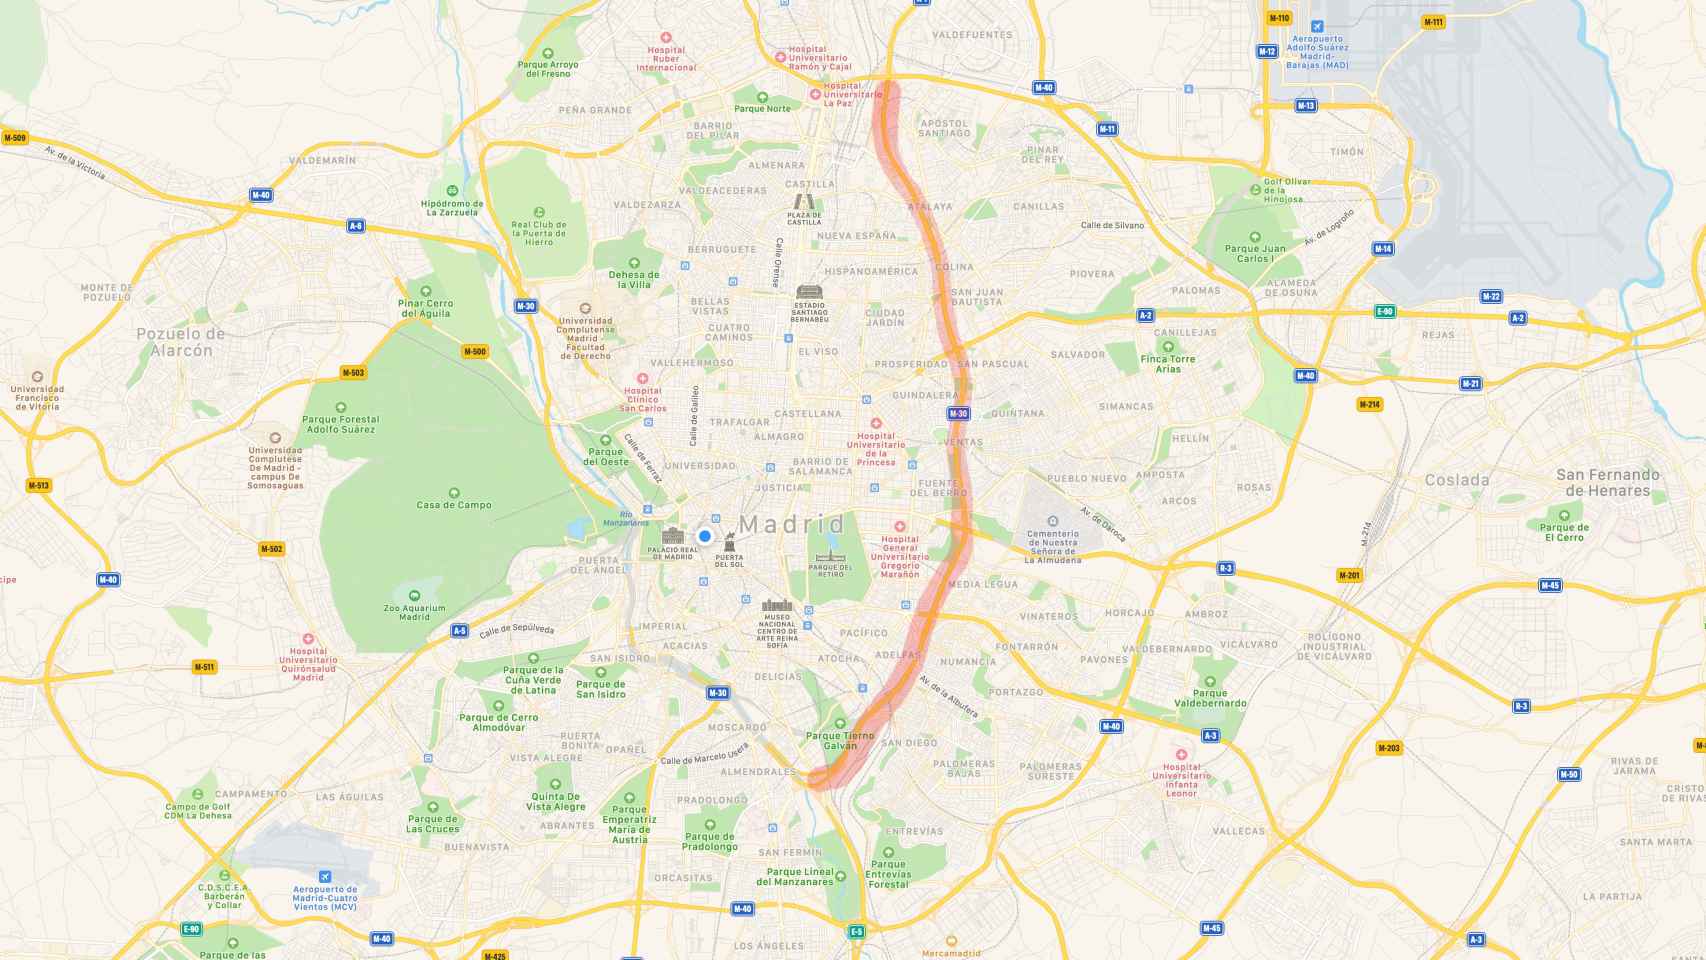 Mapa de las carreteras de Madrid con Parque-30 destacado en rojo.